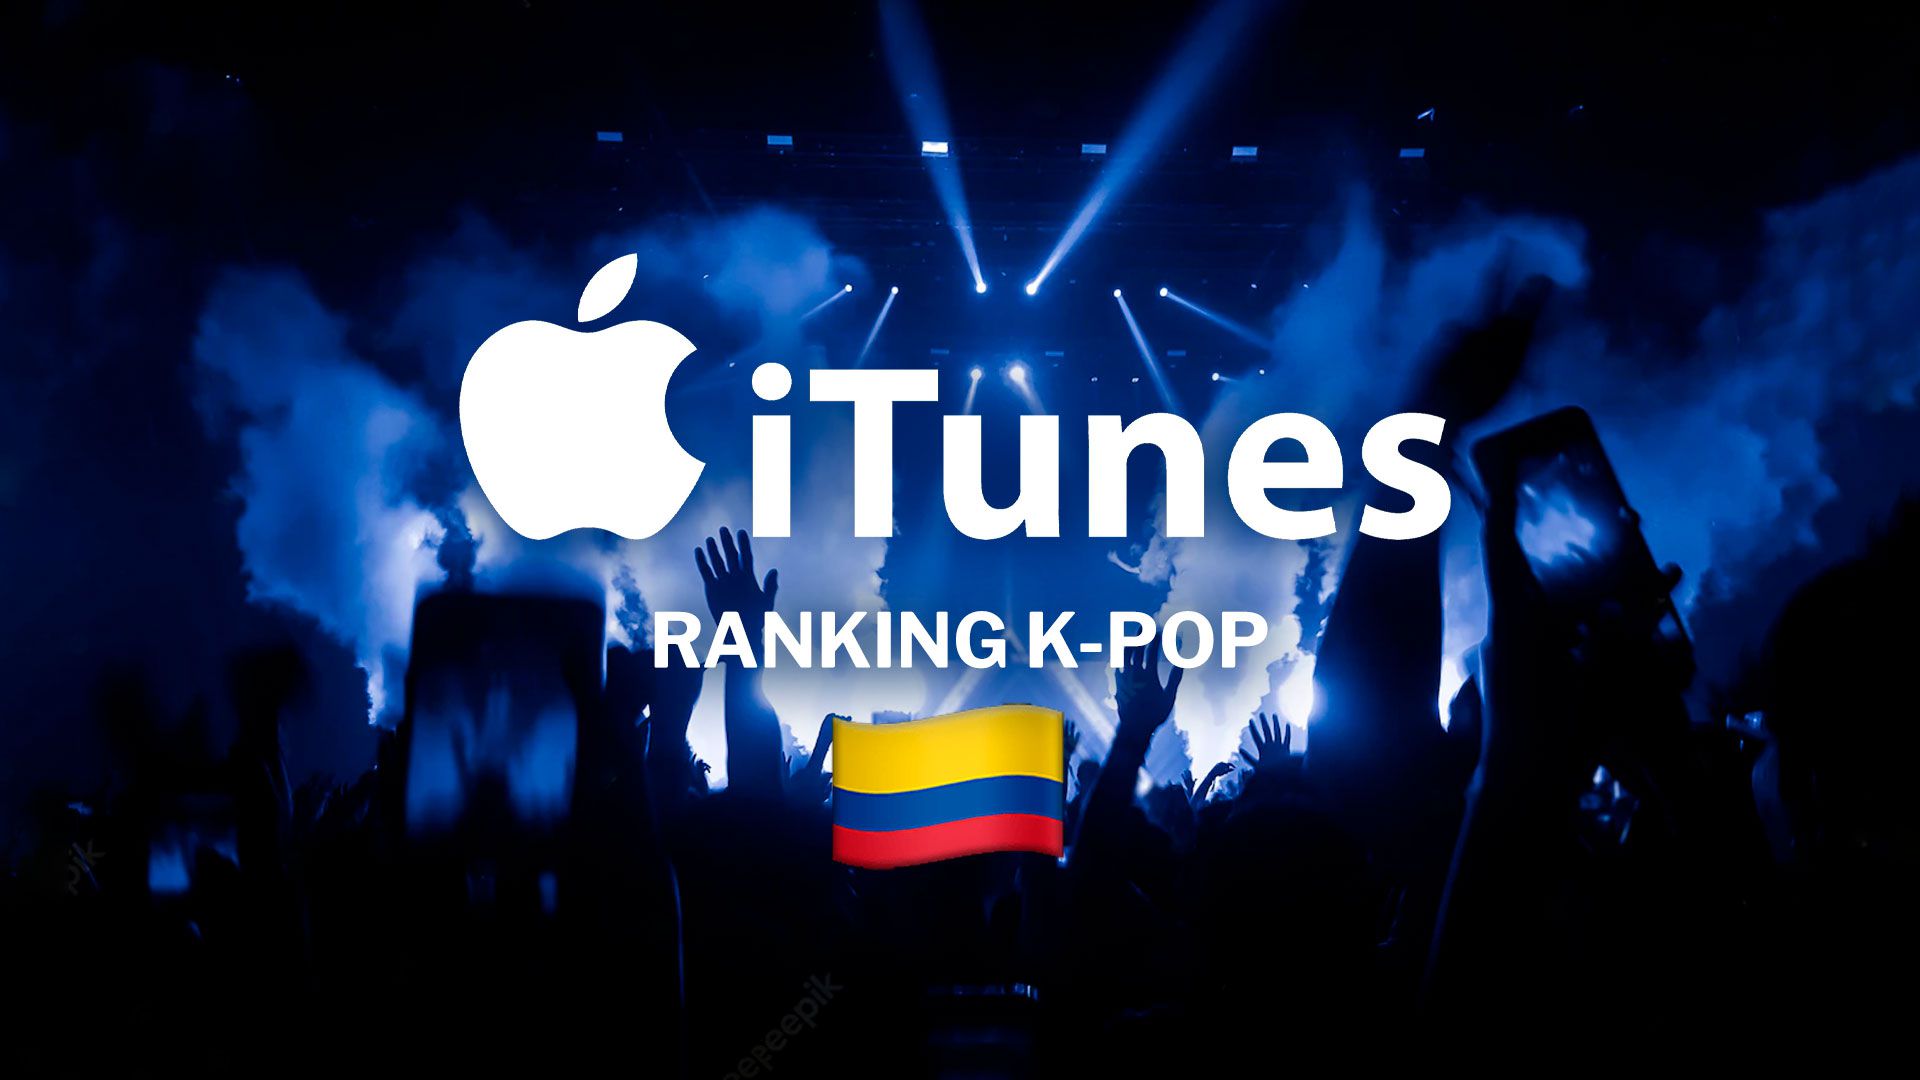 El K-pop muestra su fuerza en Colombia: descubre lo más popular en iTunes